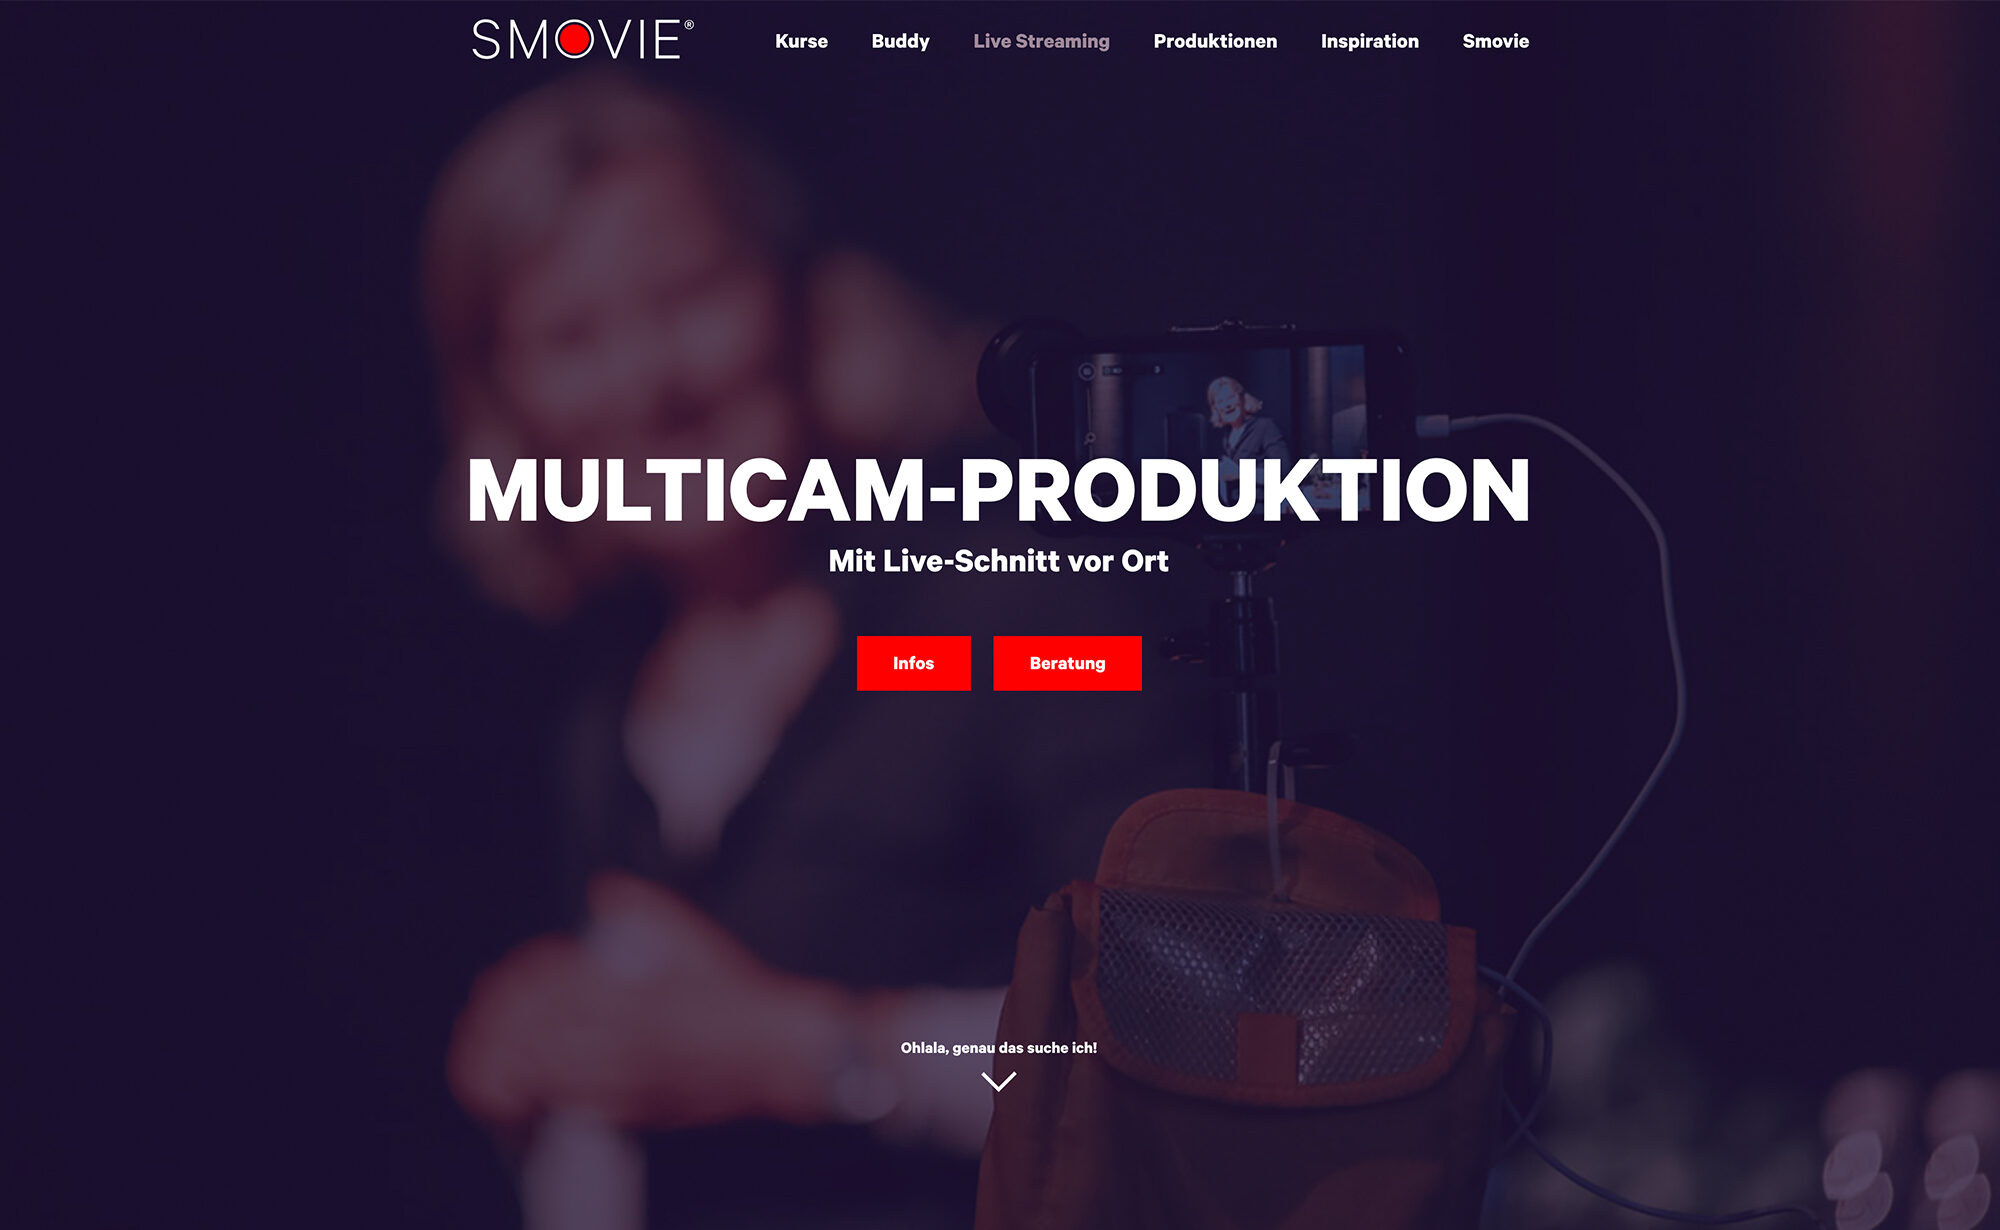 Multicam-Produktion, Screenshot Website - Smovie Film GmbH, smovie.ch